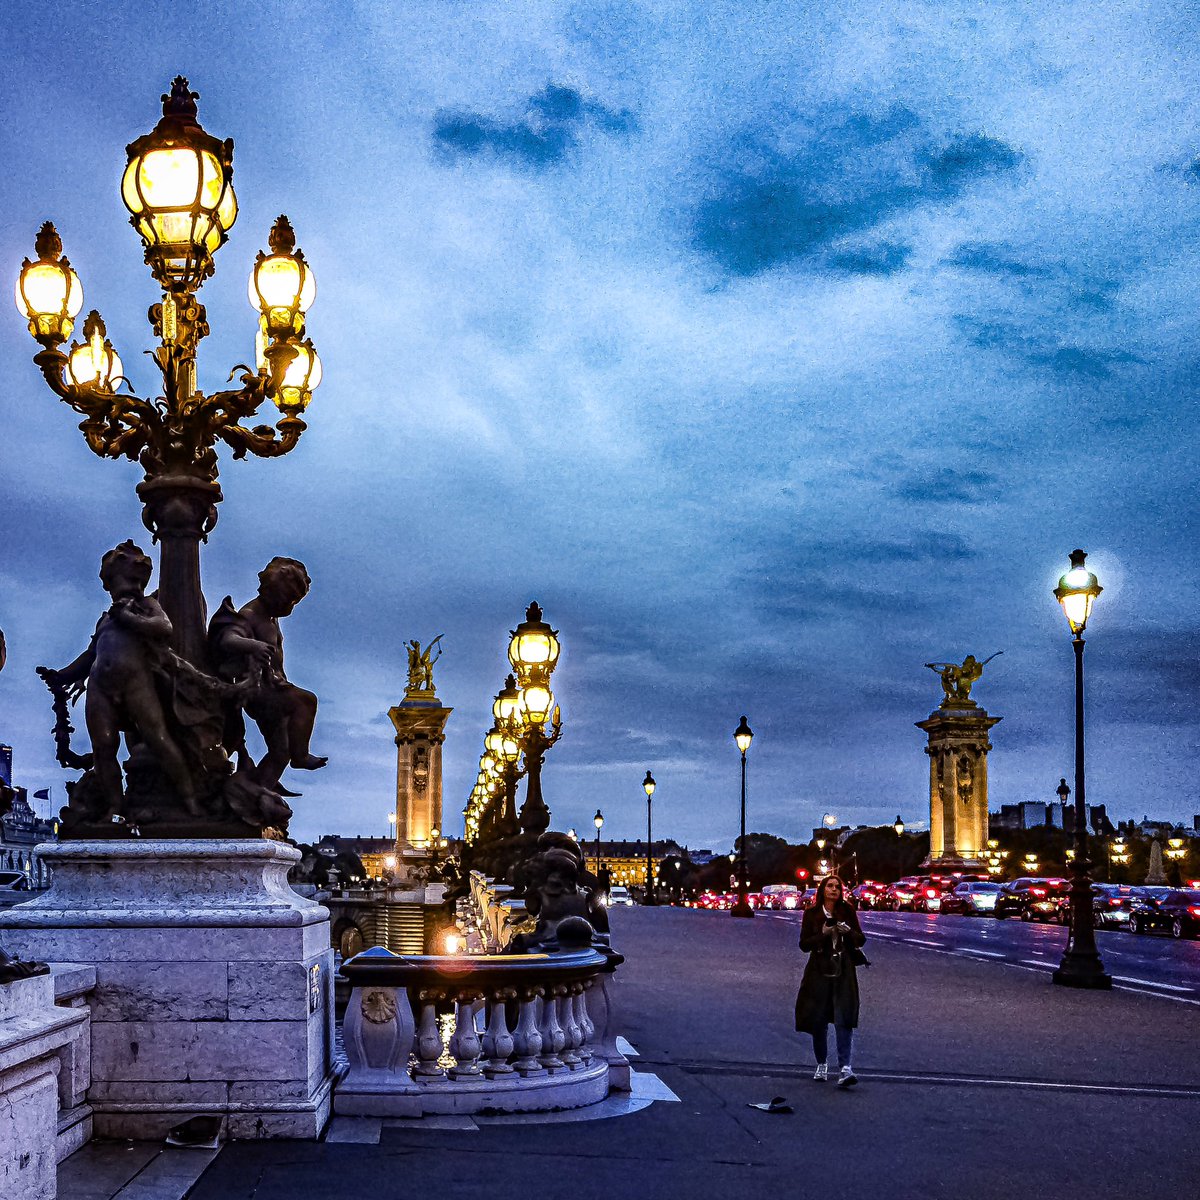 Pont Alexandre III à la tombée de la nuit

#parisladouce #paris #pariscartepostale #parisjetaime #pariscityguide #paris7 #thisisparis #visitparisregion #patrimoine #architecture #streetofparis #pontalexandreiii #pont #paris8 #parispatrimoine